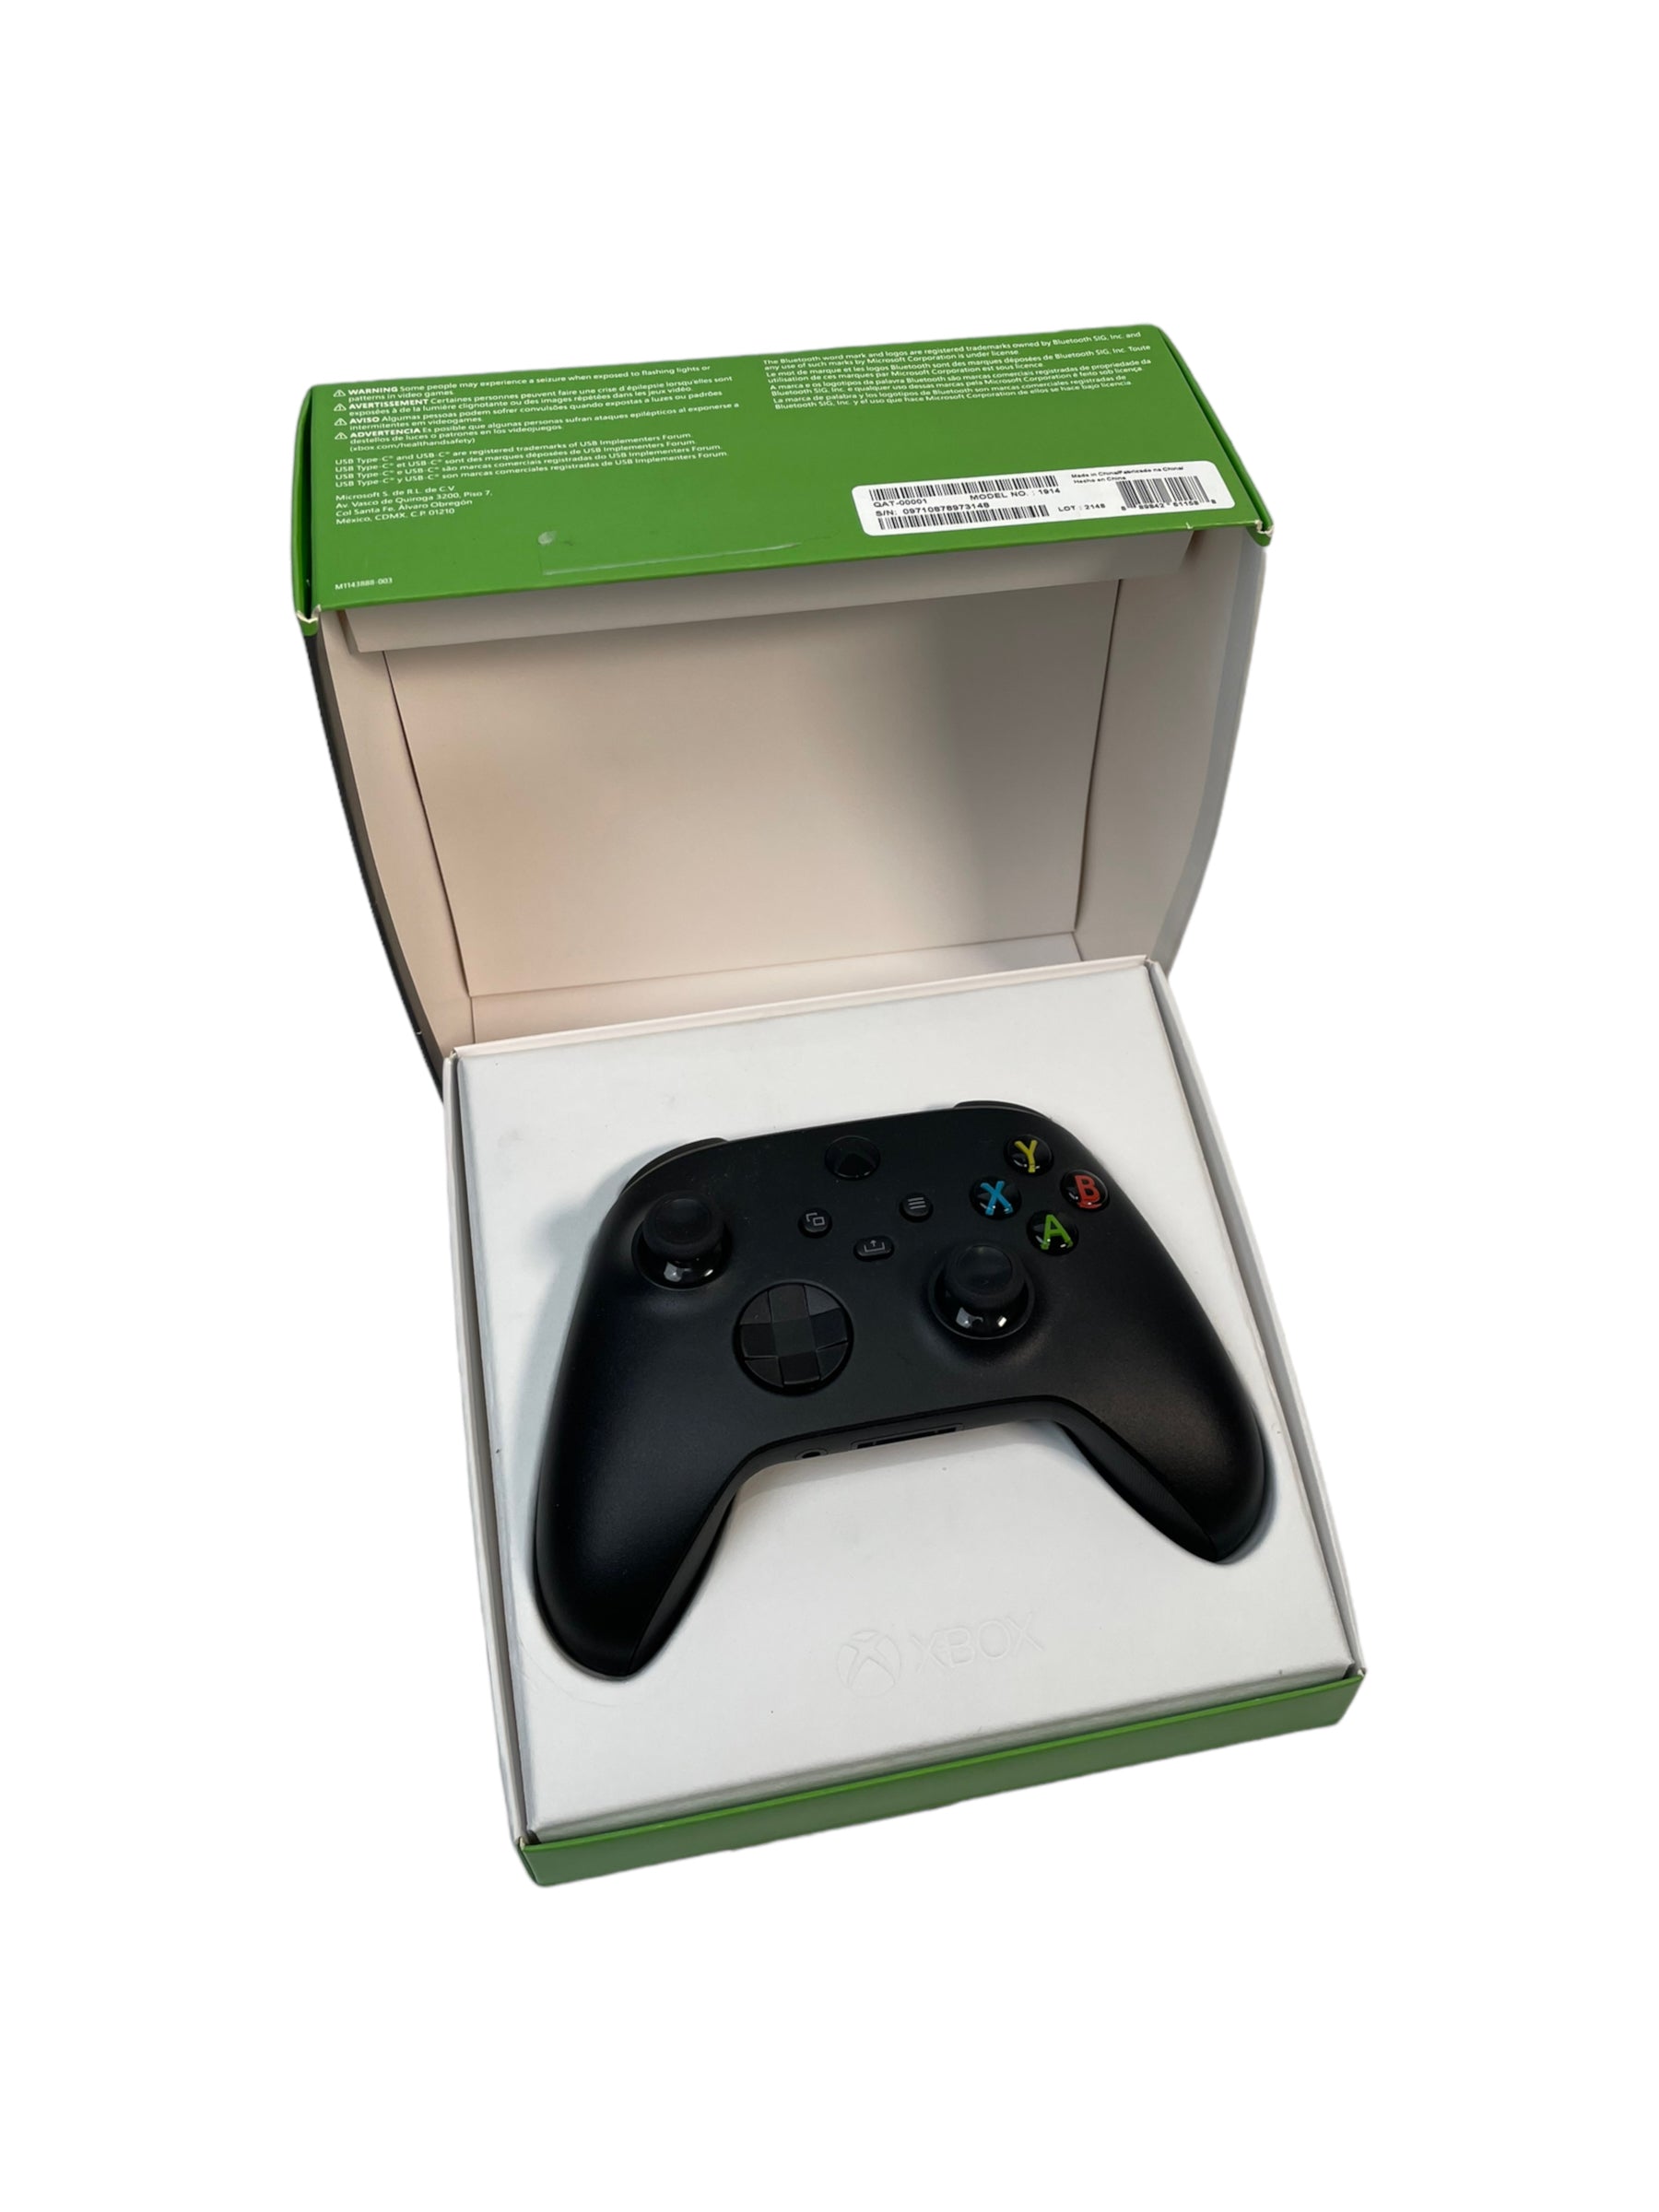 Manette sans fil Xbox Series X/S en noir carbone